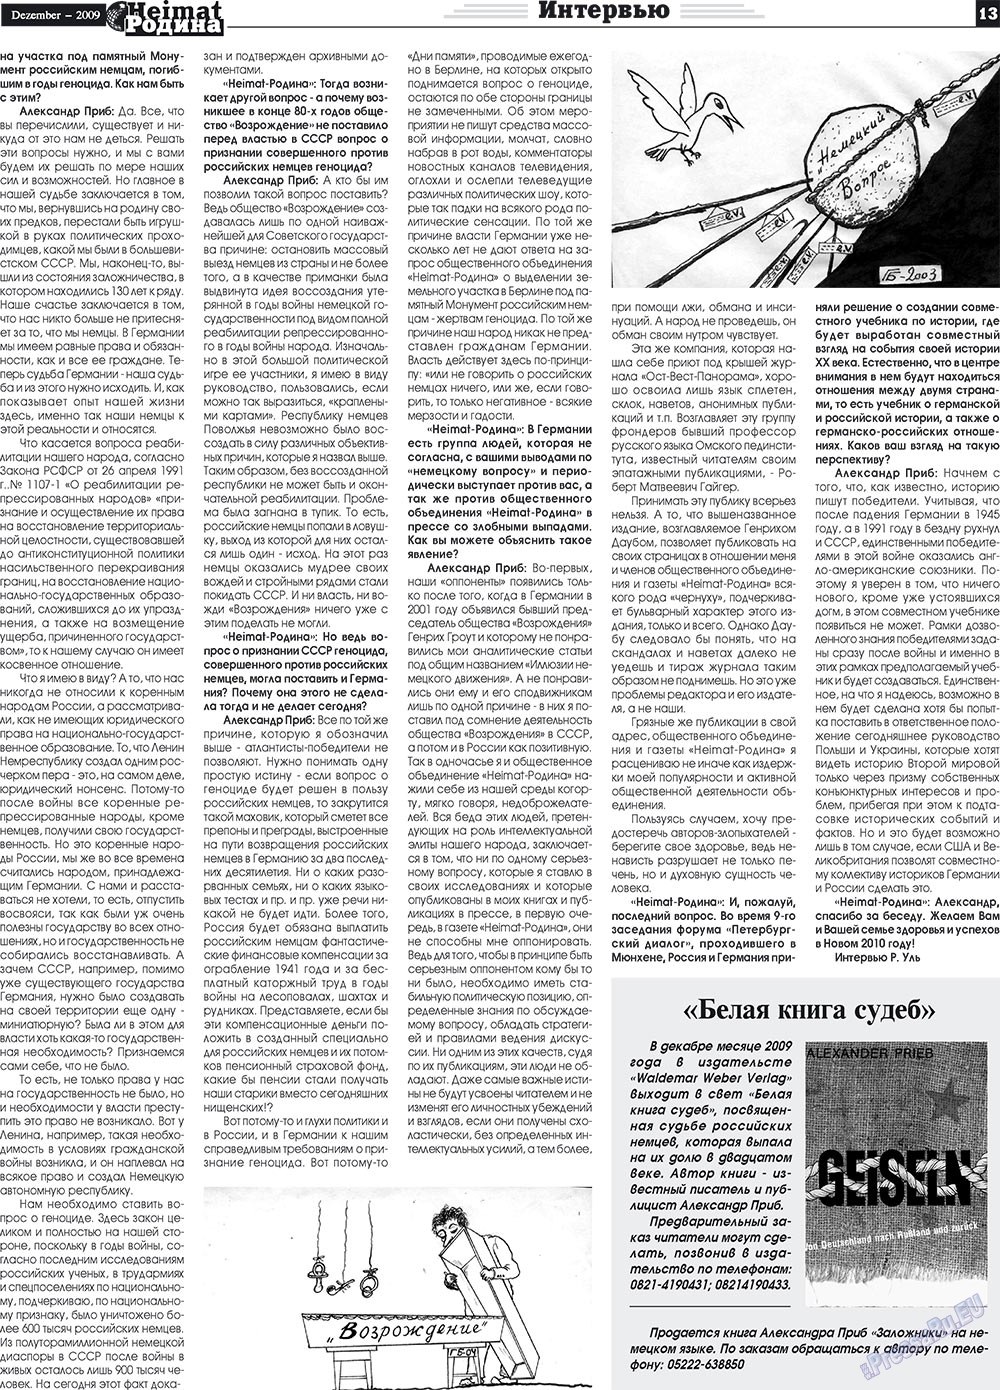 Heimat-Родина (газета). 2009 год, номер 12, стр. 13